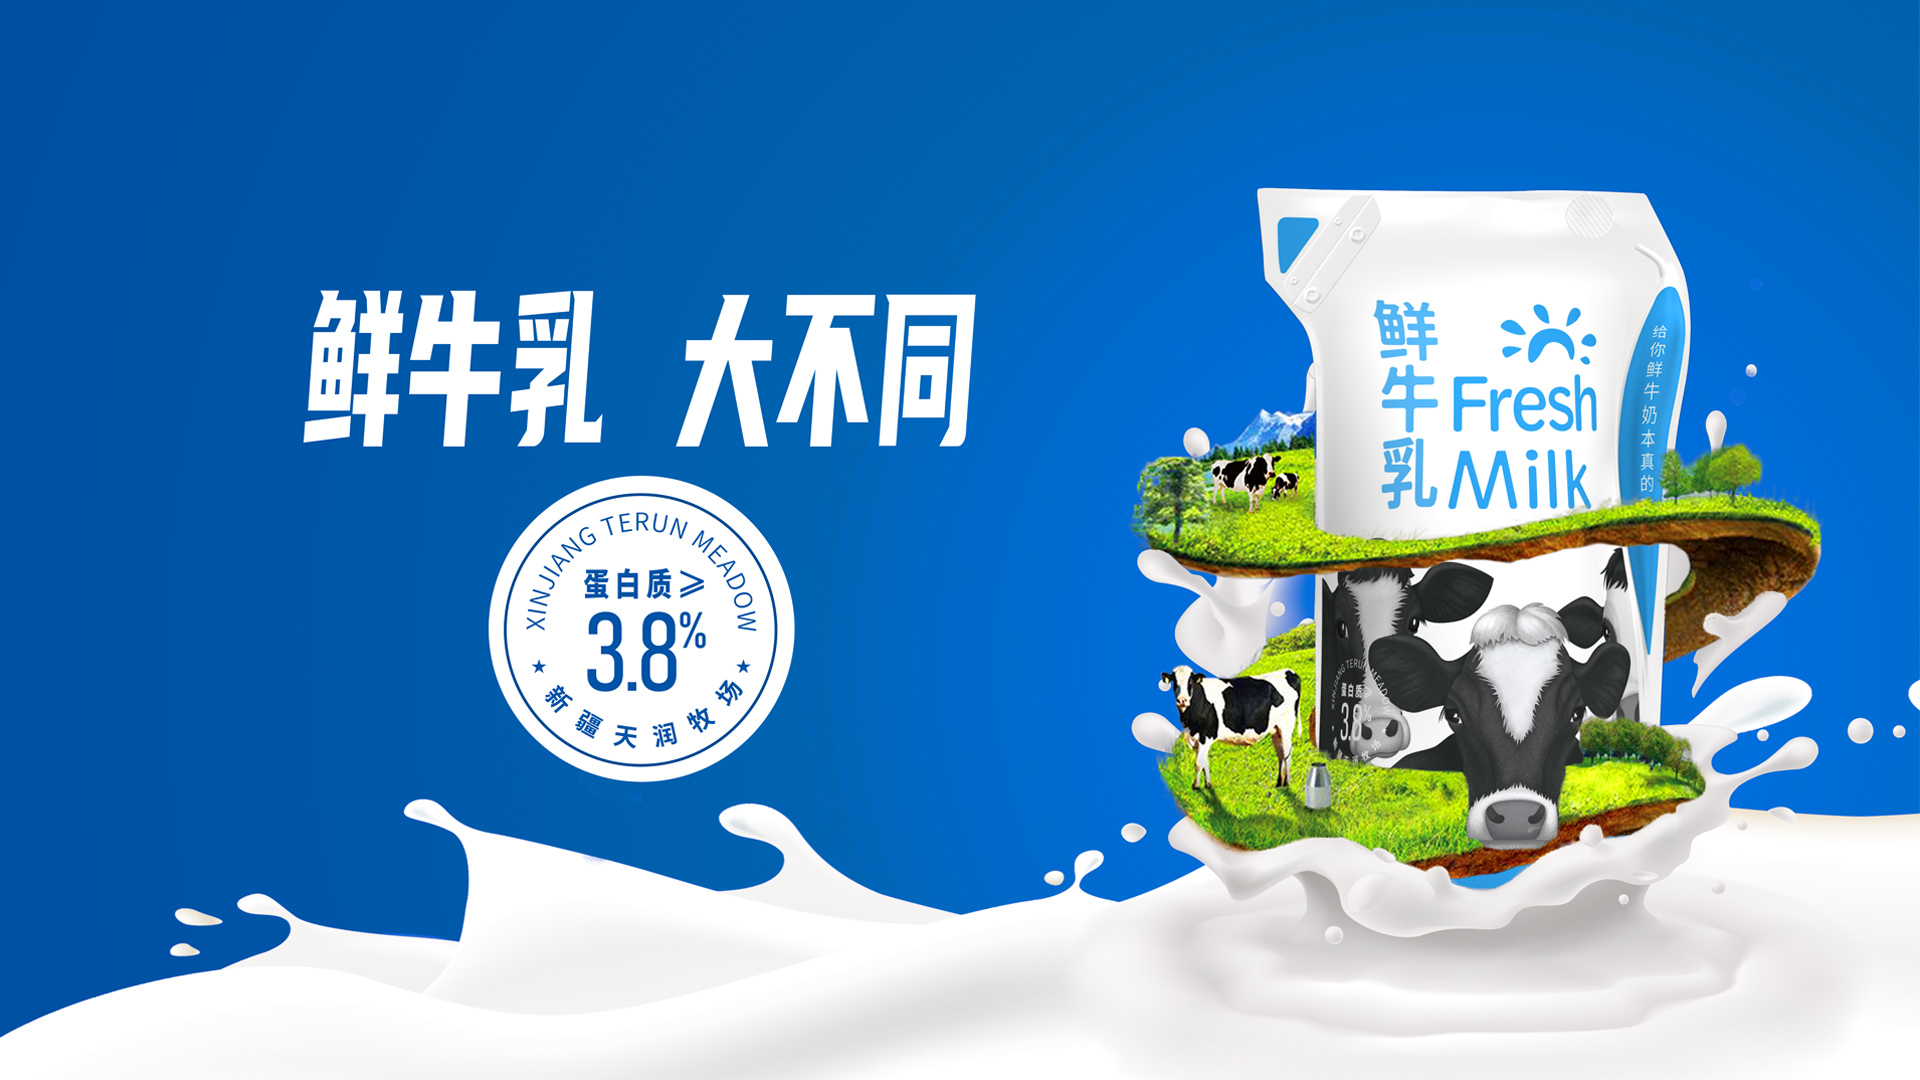 全球第一：国产乳业包揽世界乳品创新奖六项大奖_福图喜纳FOOD2CHINA_进口食品_IMPORTEDFOOD